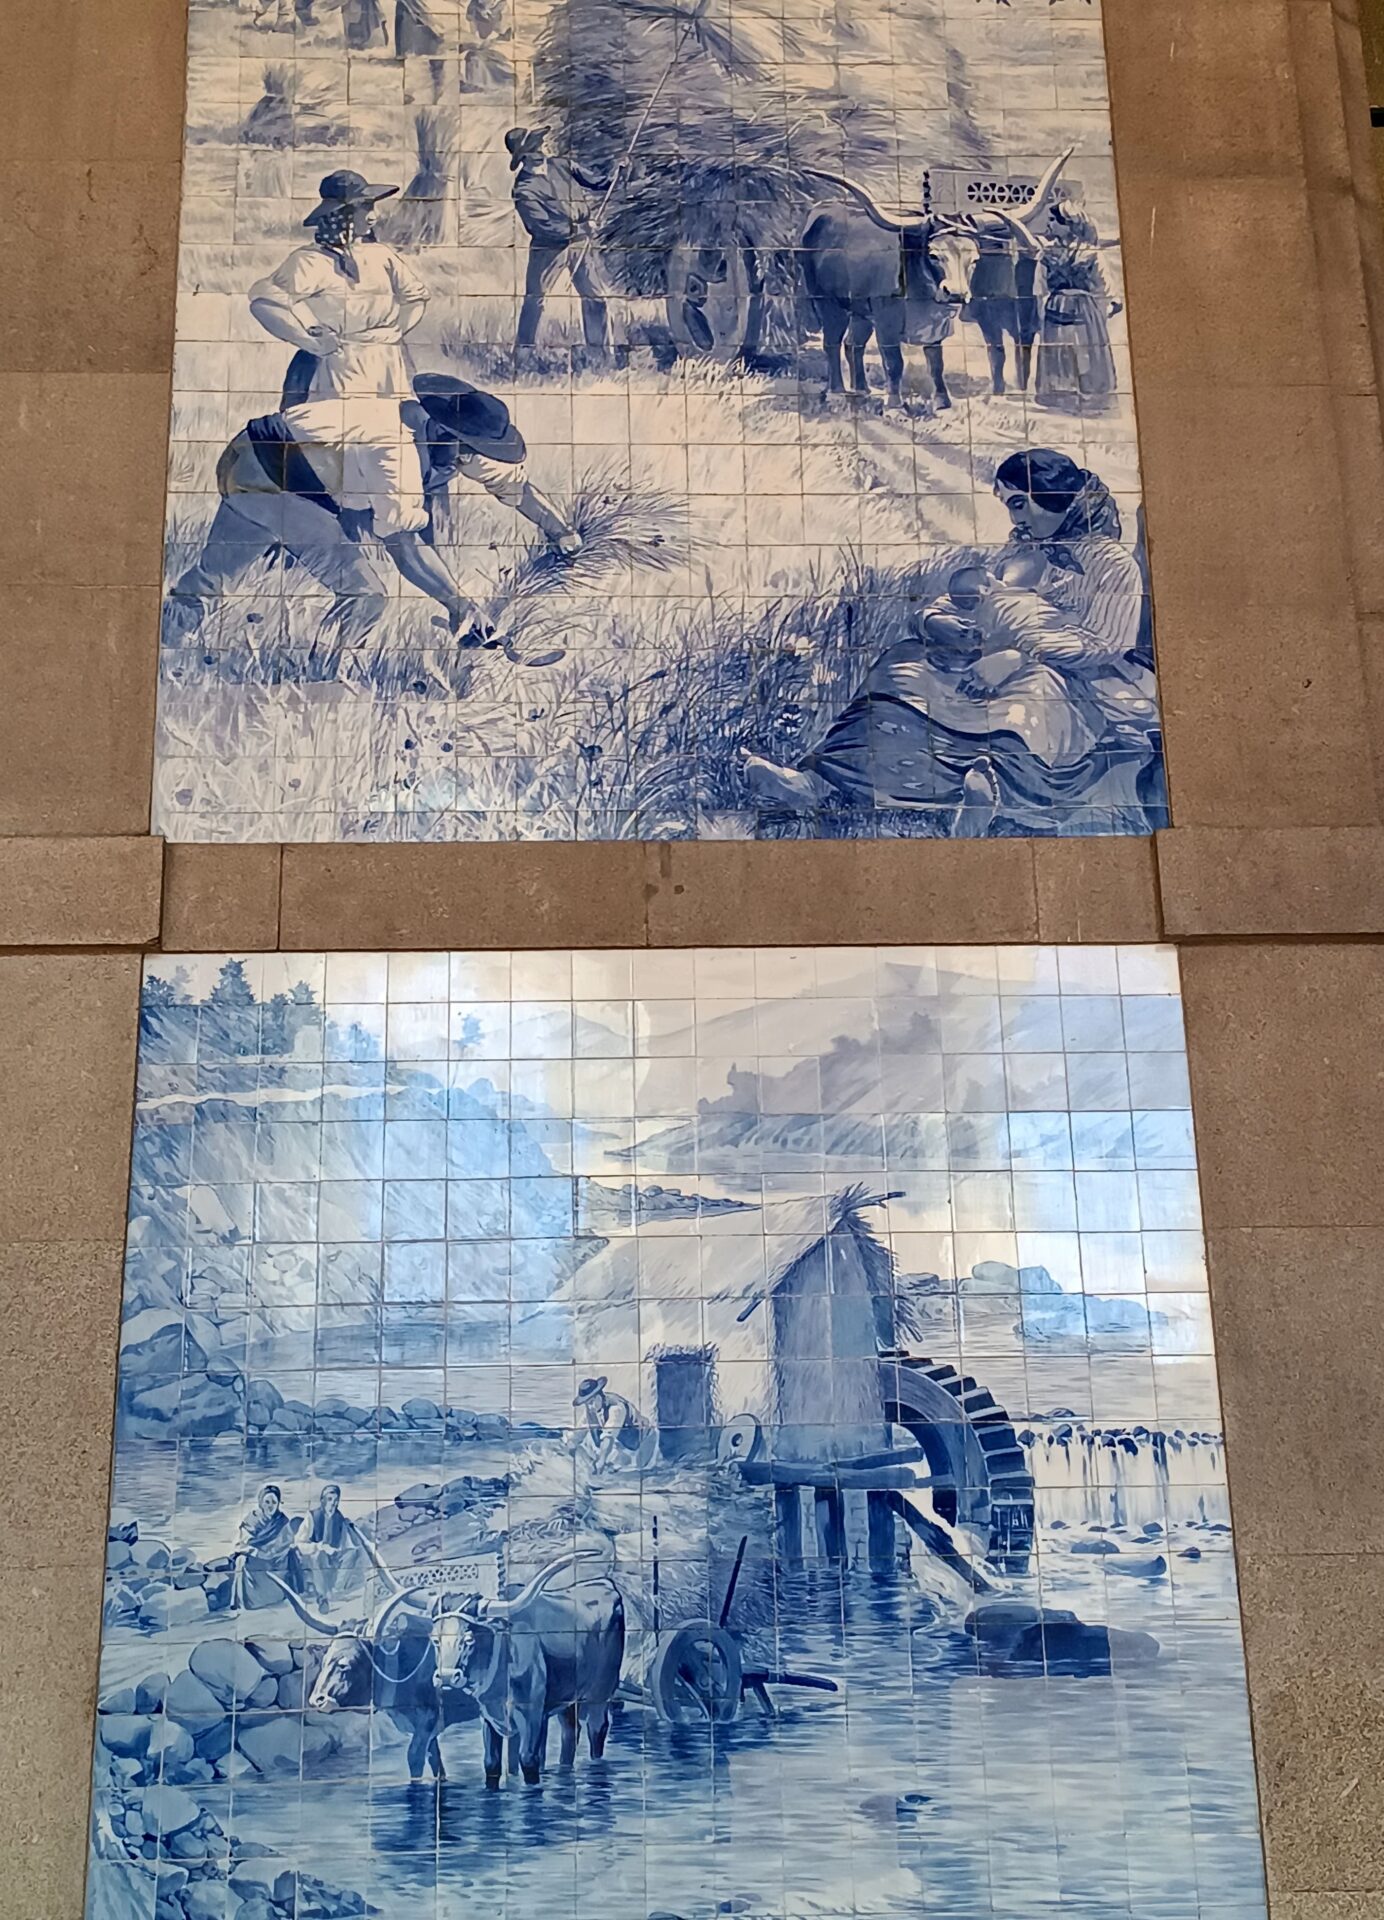 Historia de Portugal en los azulejos de la estación de Sao Bento